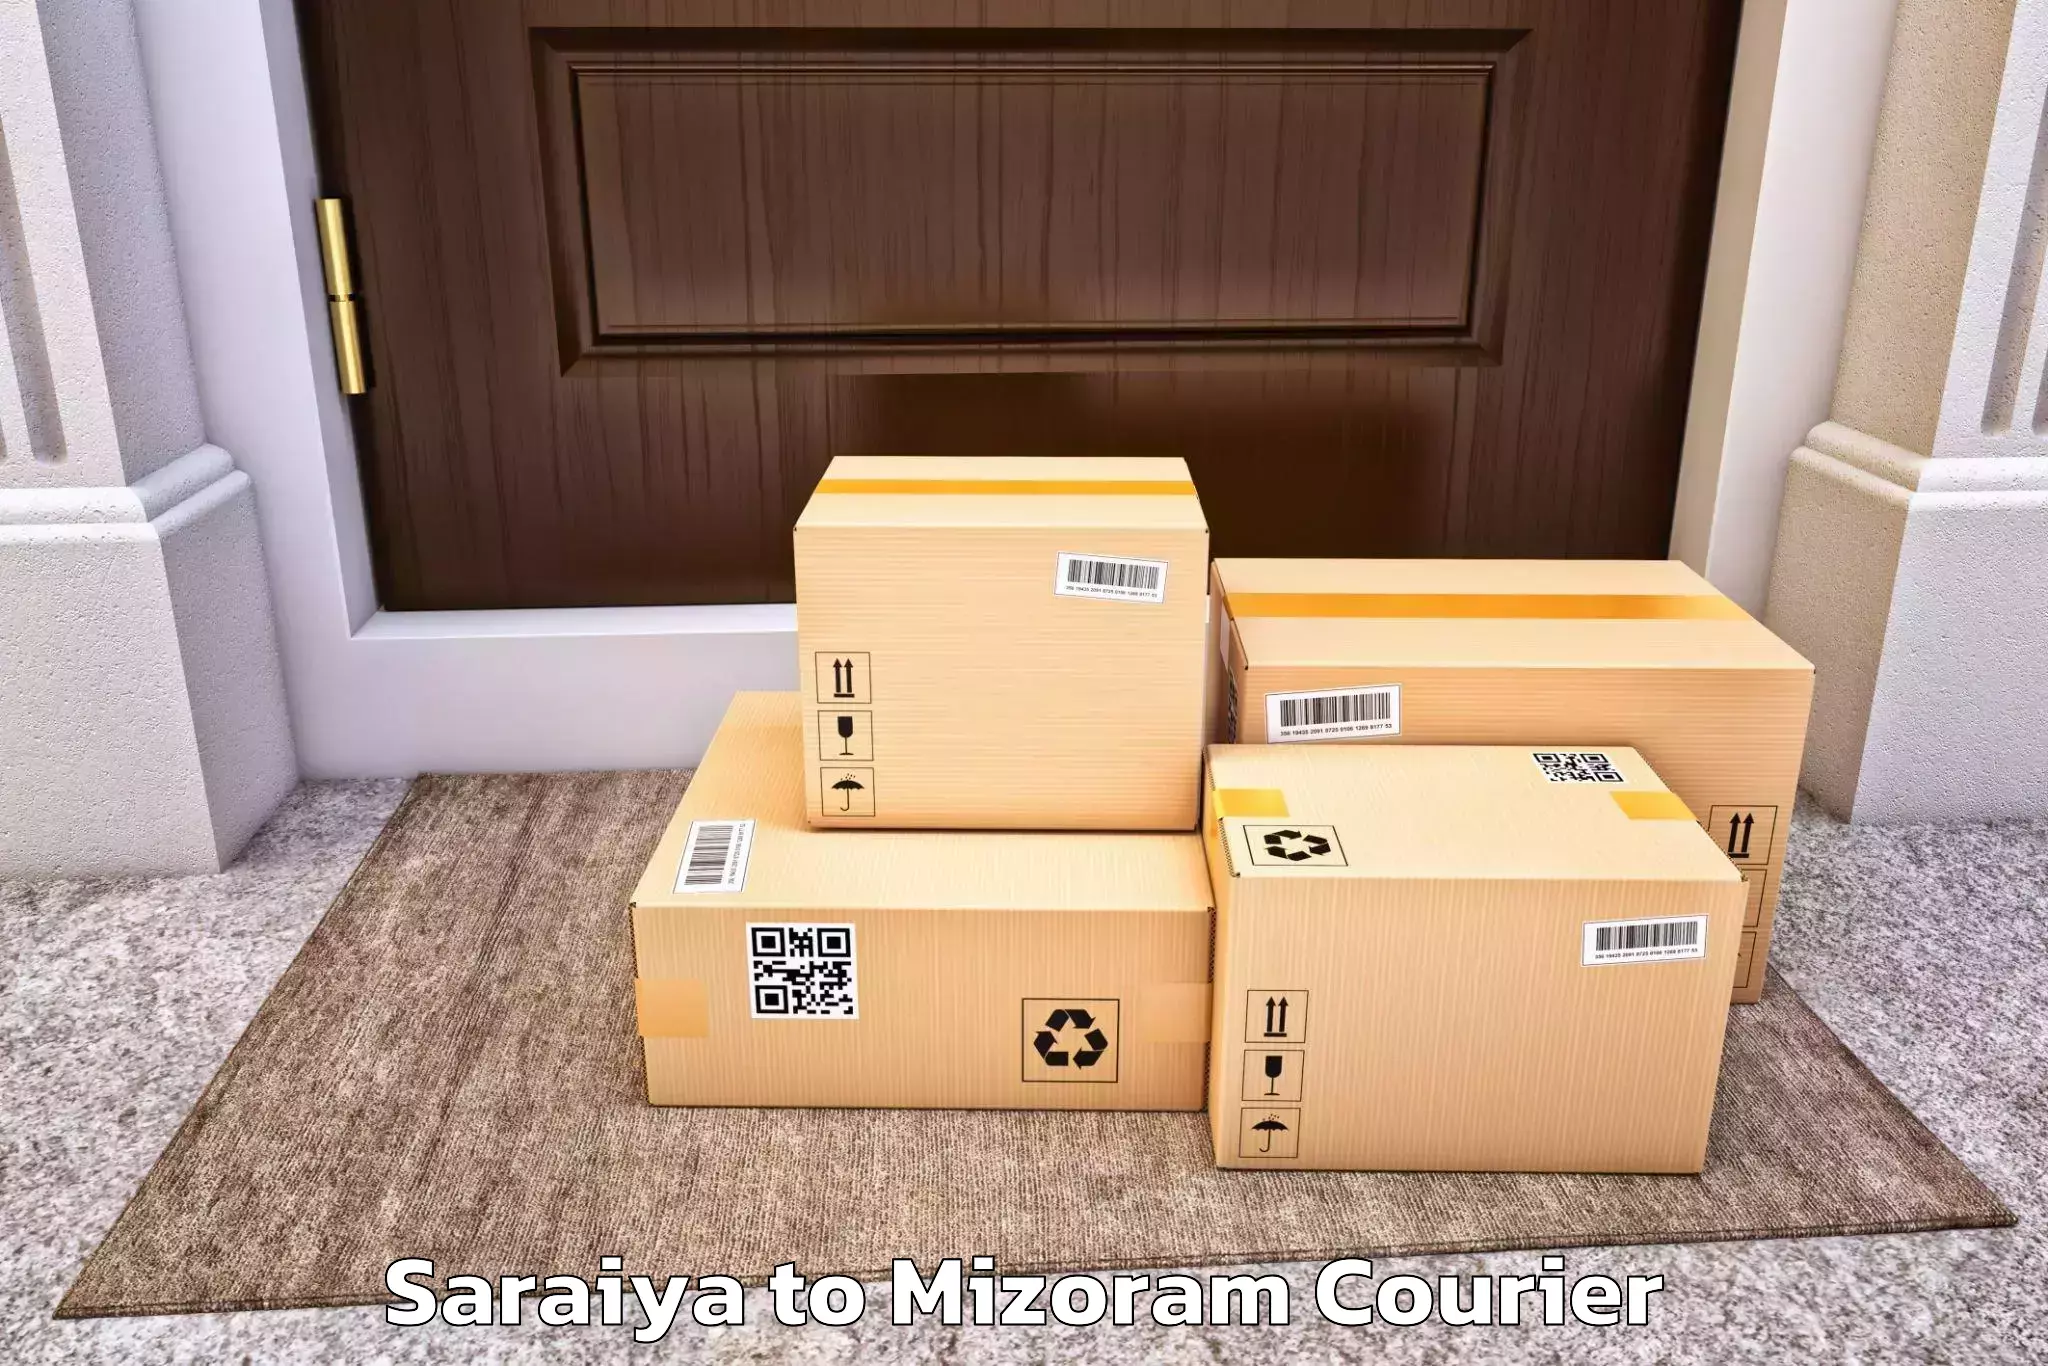 Customized moving solutions Saraiya to Saitual